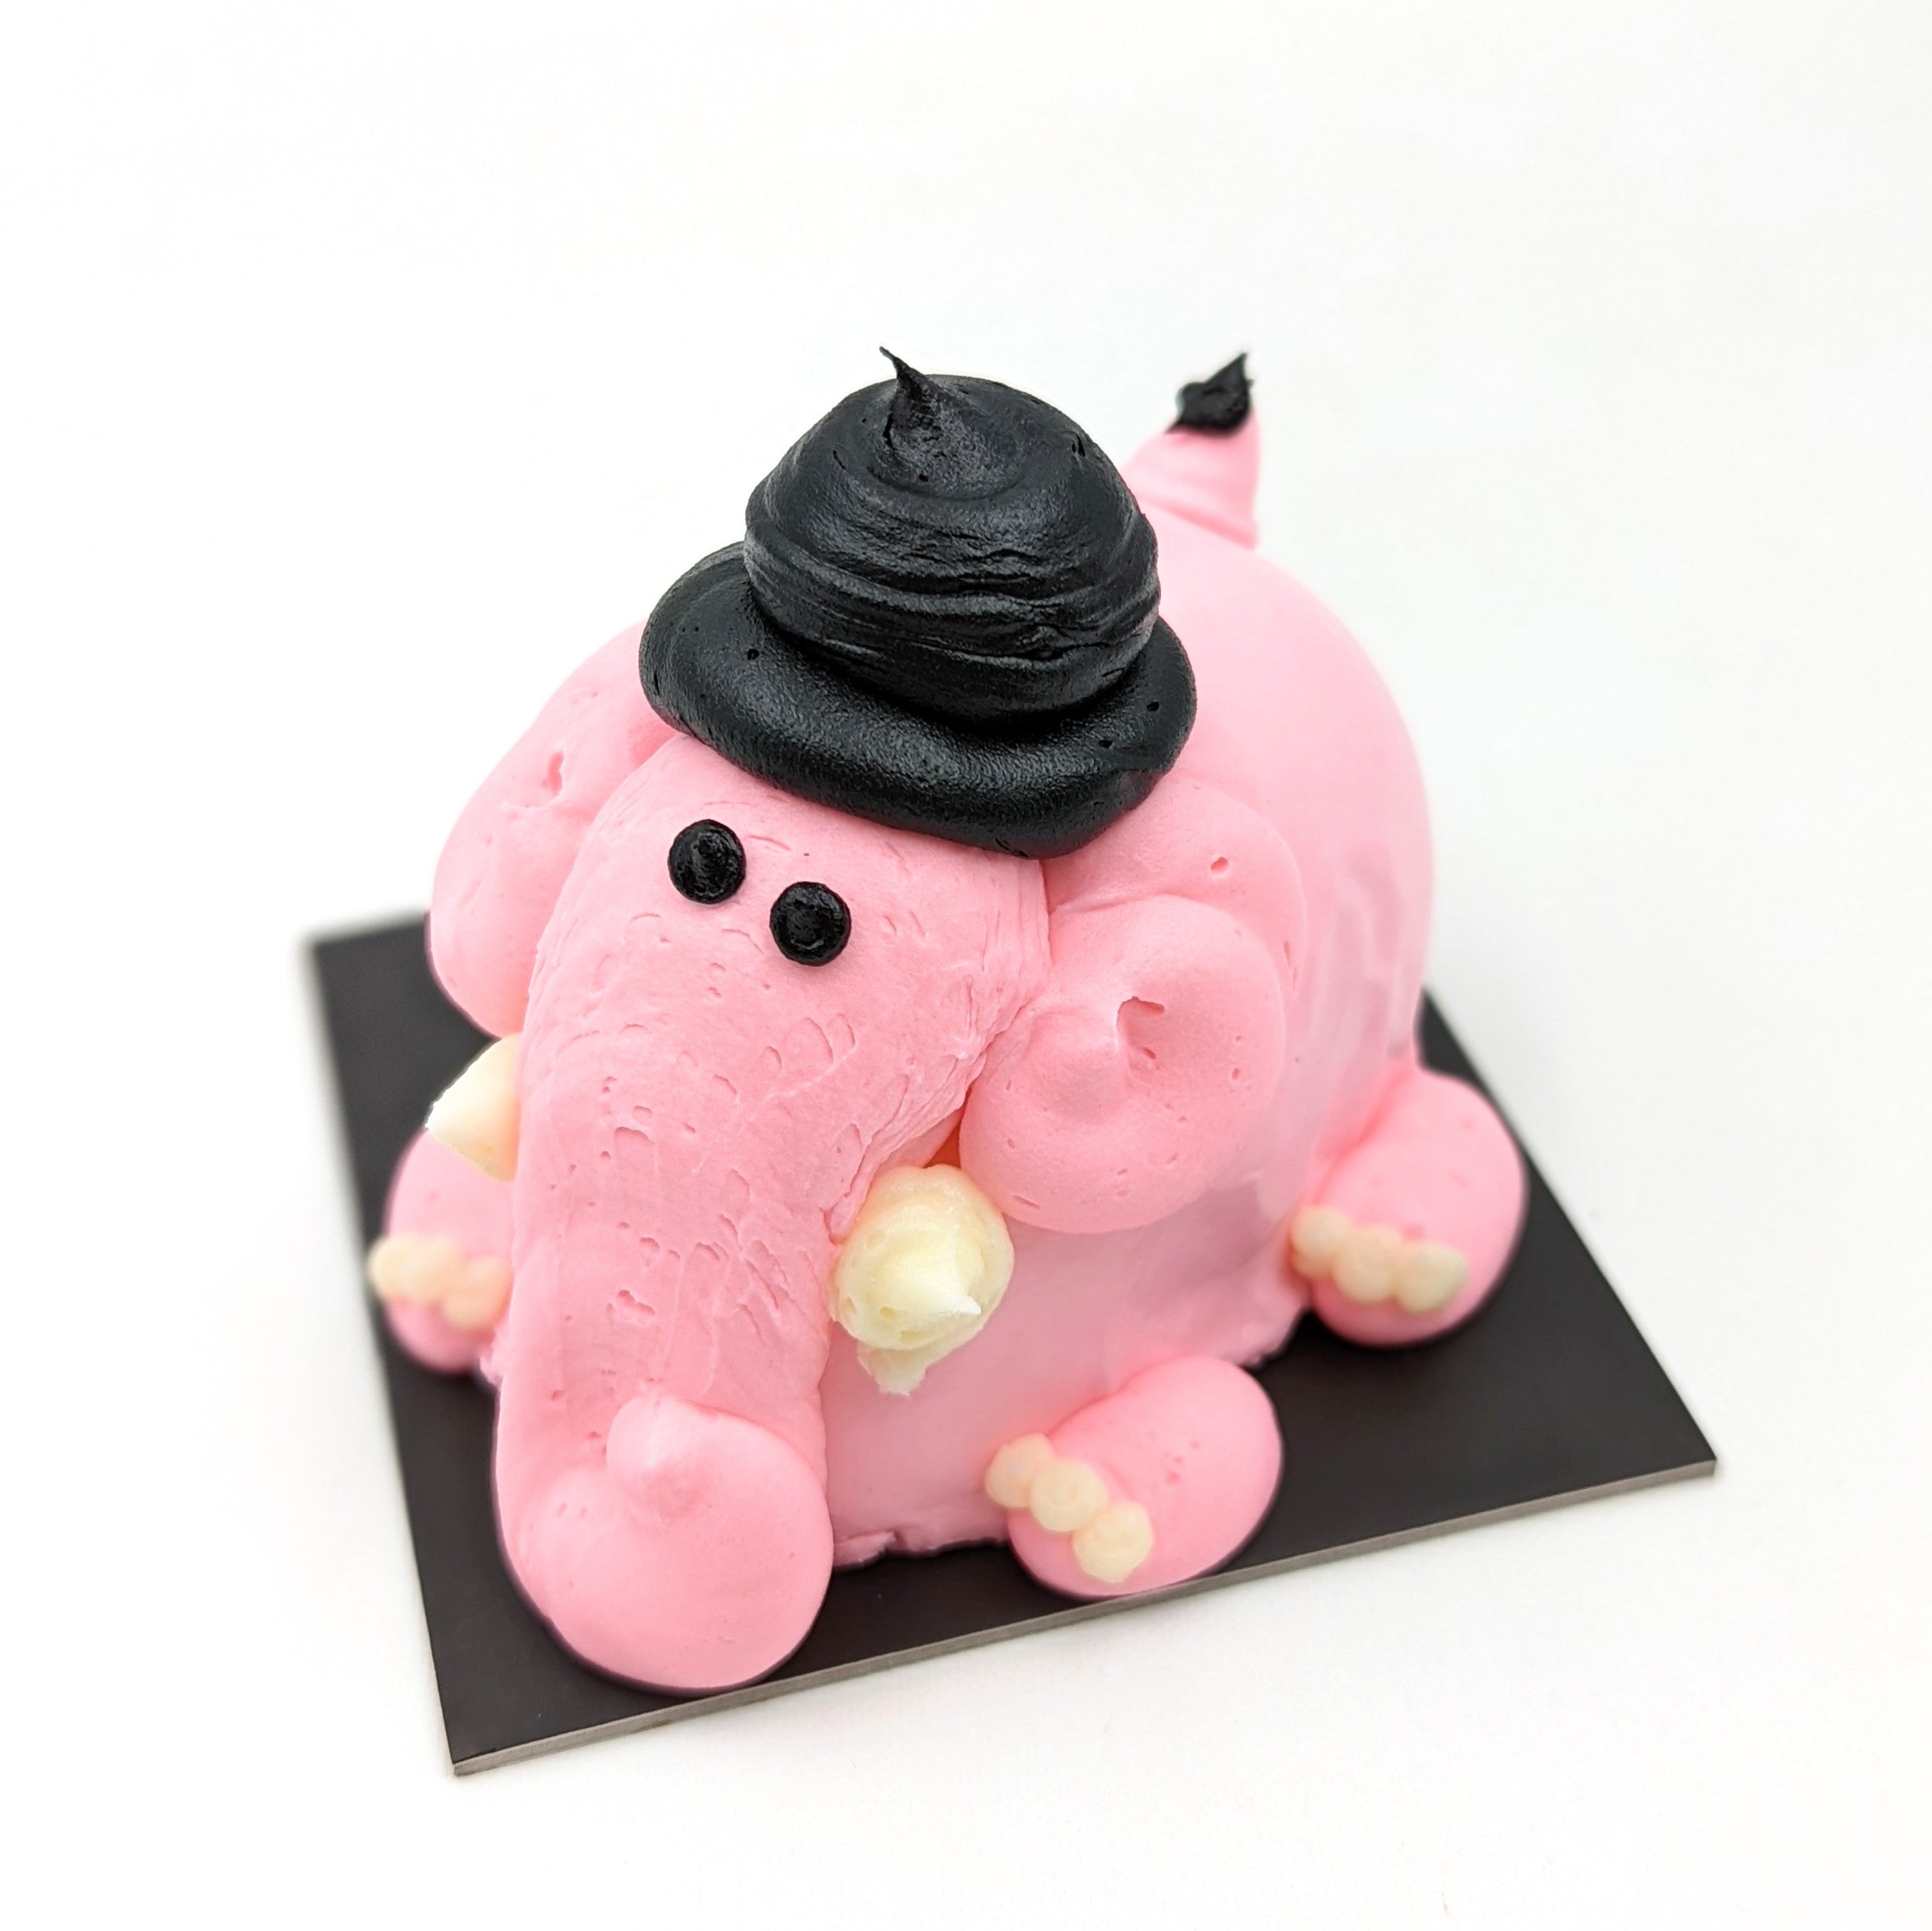 Elephant Cake Tutorial! - YouTube